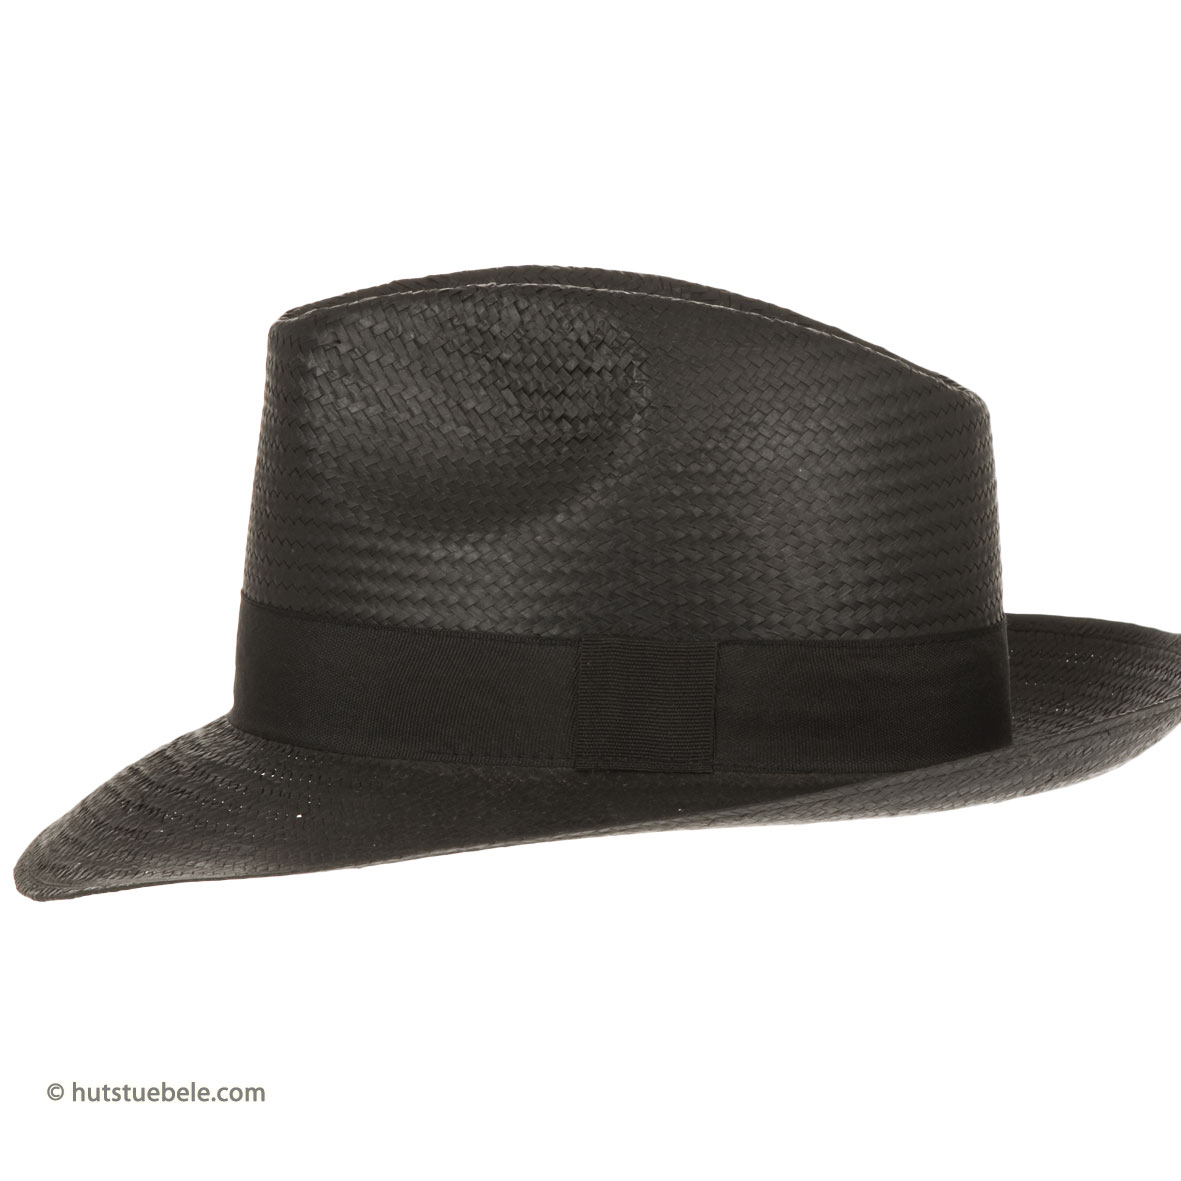 Leichter Sommerhut Stroh Hut braun mit schwarzem Band klassisch Männer Frauen